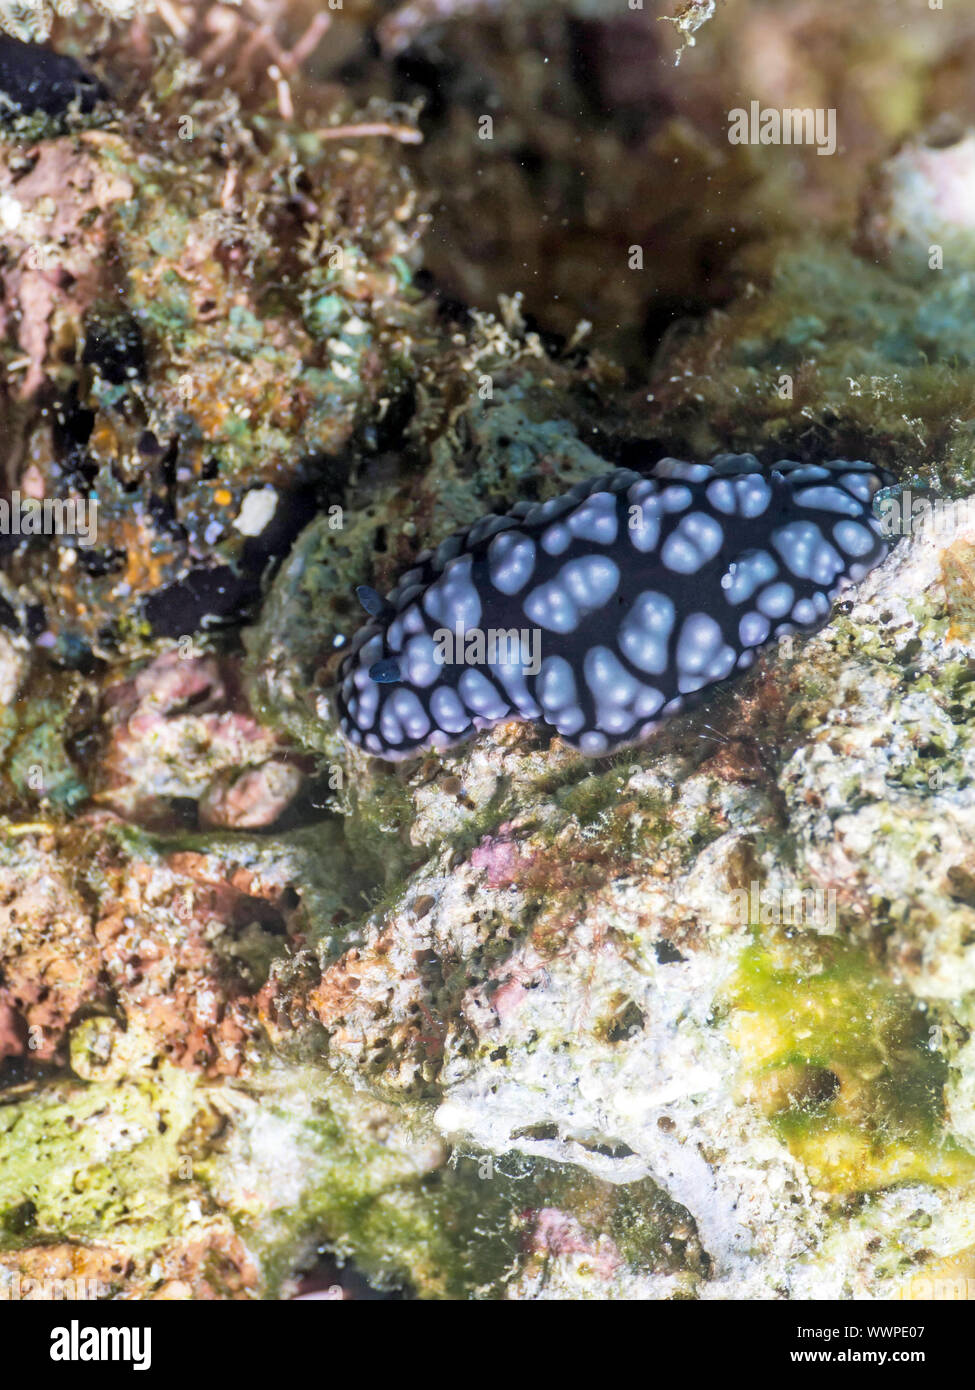 Sea slug (Phyllidiella pustulosa) Stock Photo